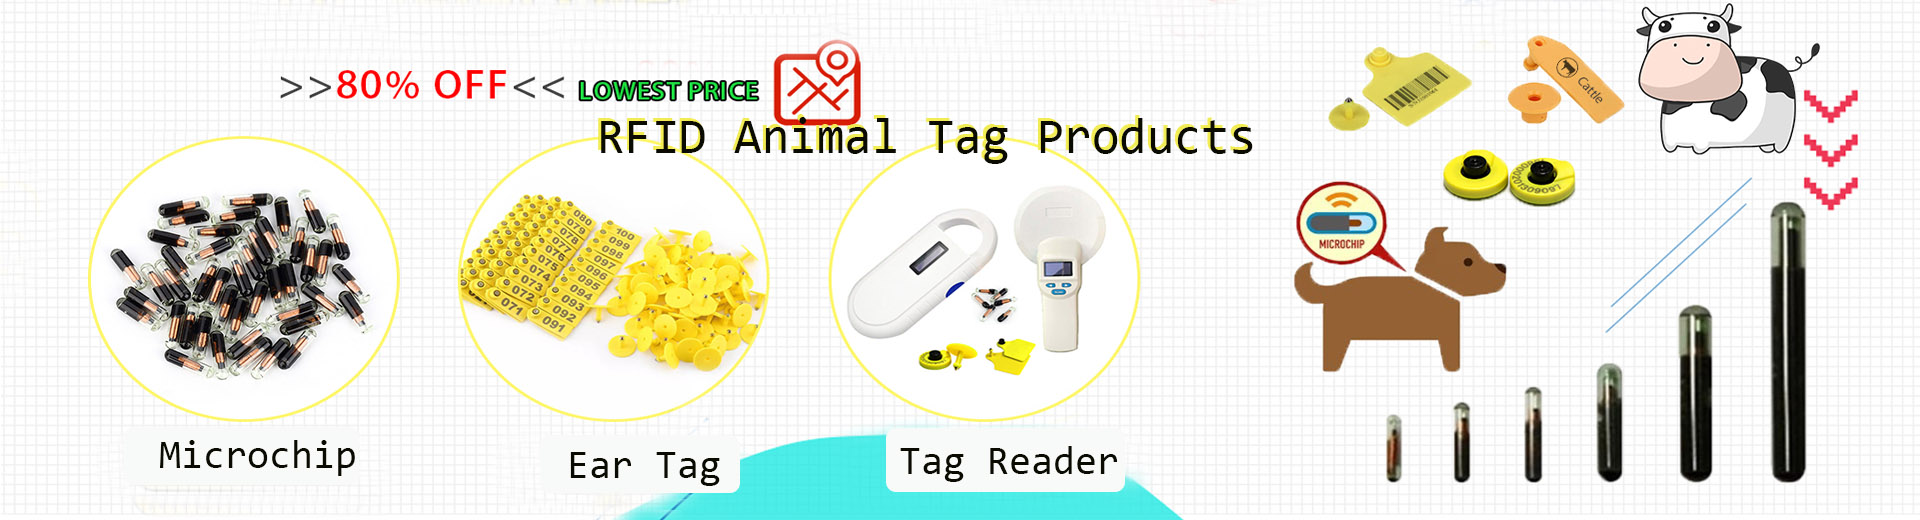 RFID Animal Tags